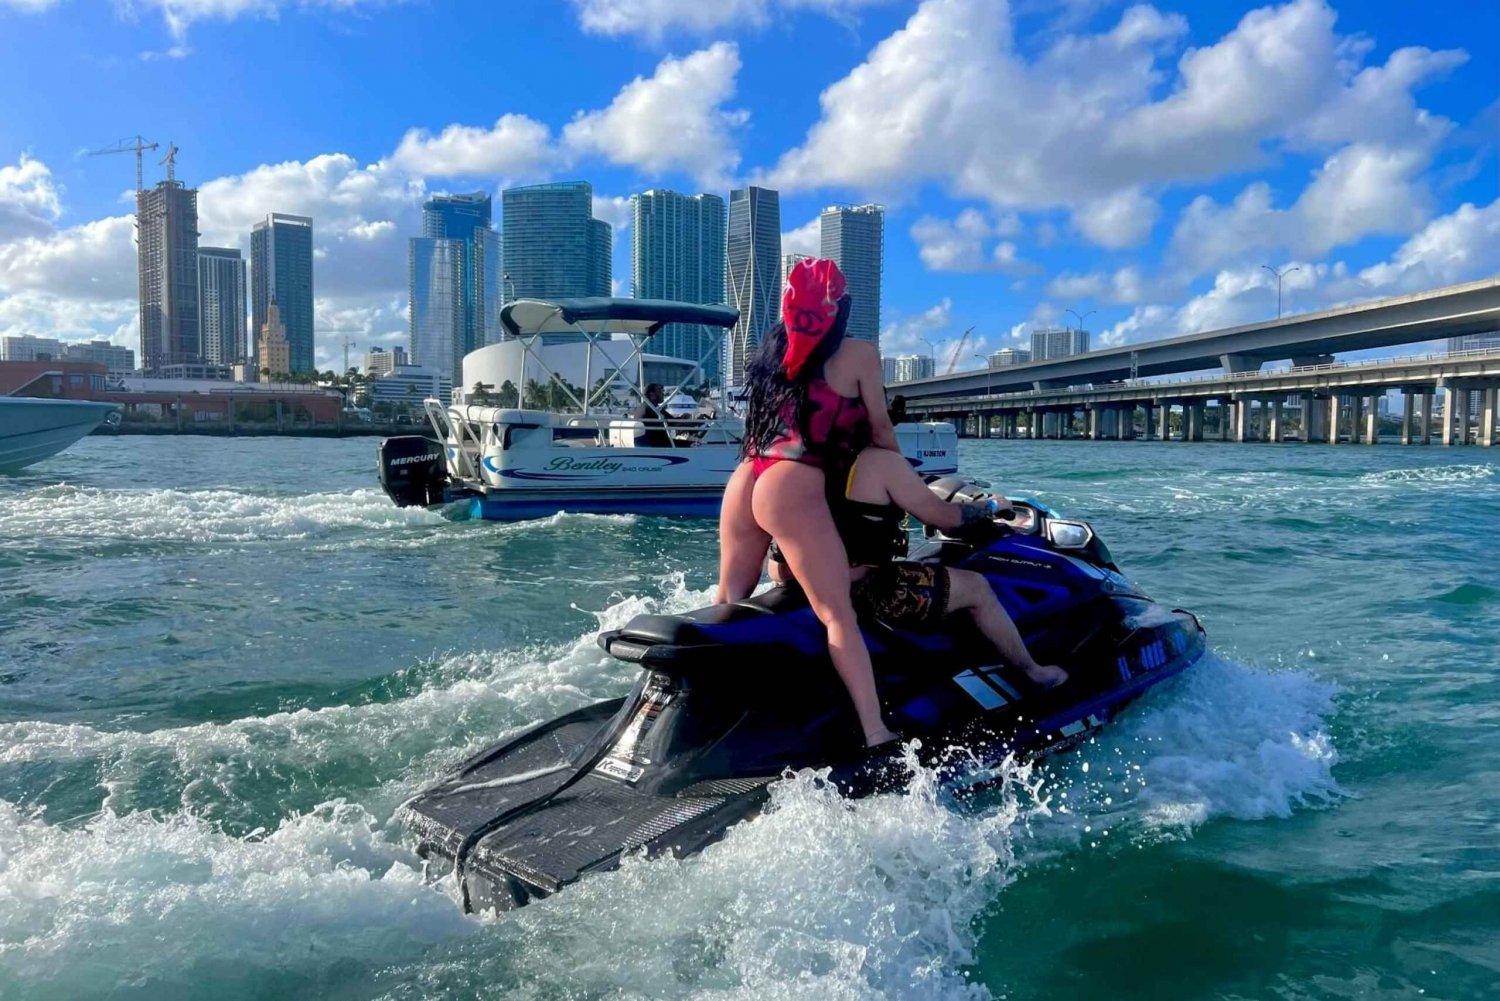 Miami Beach: Miami Beach & Boat Ride